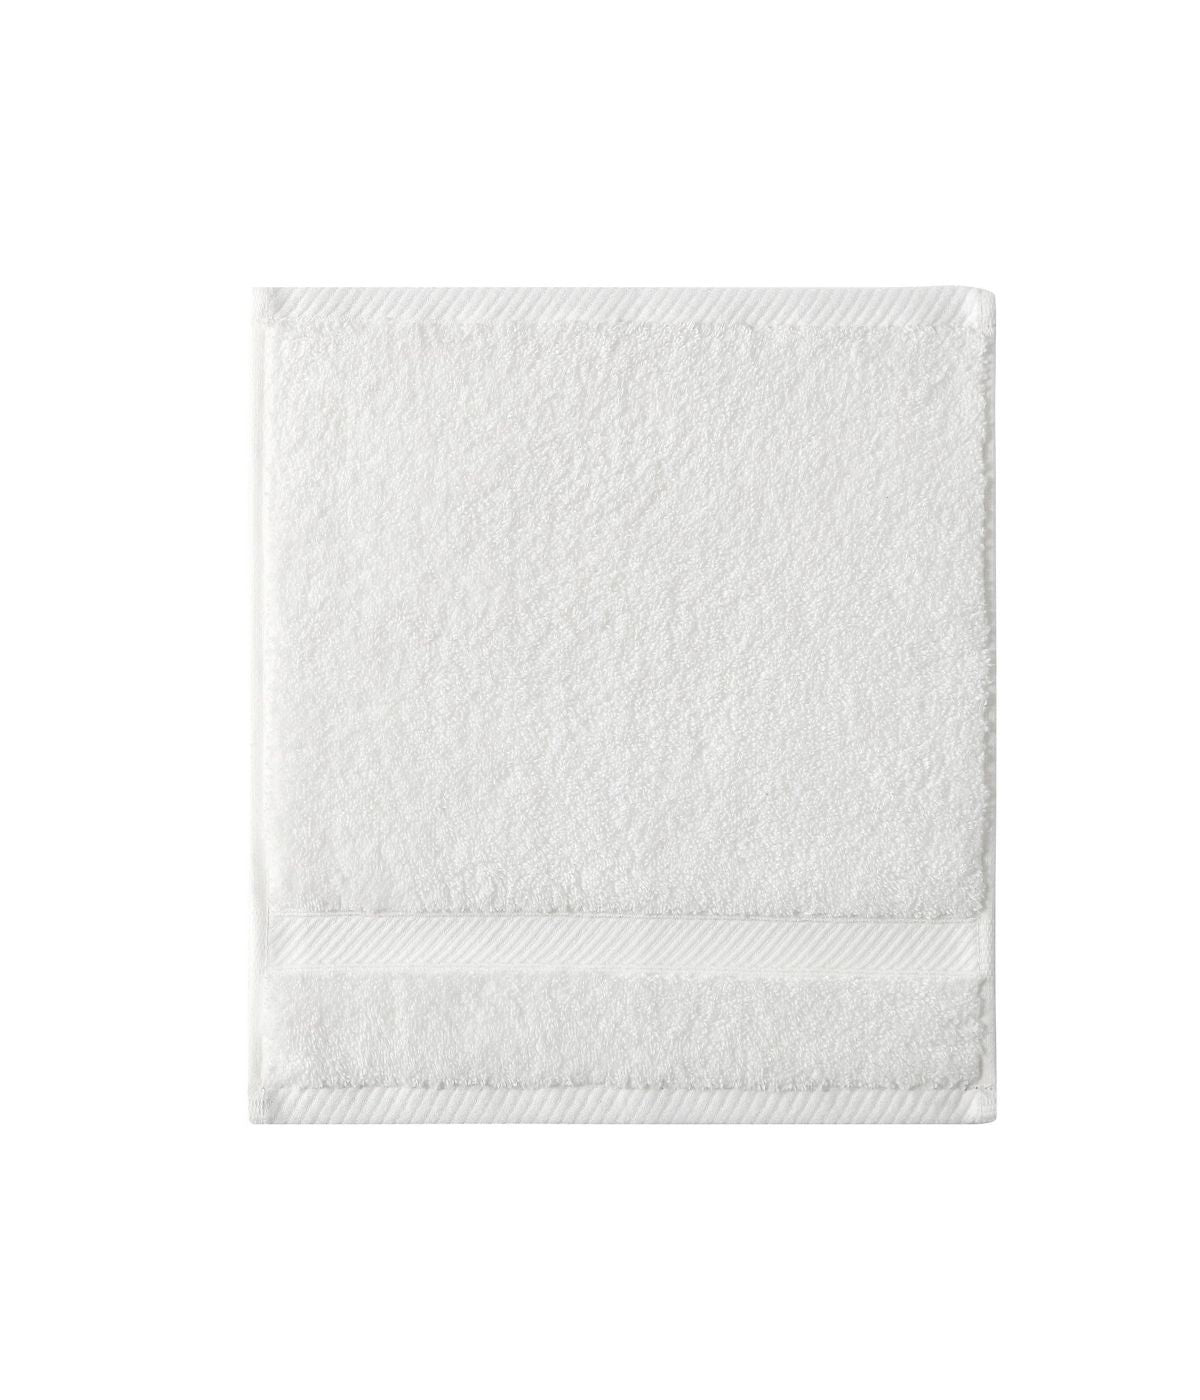 Charisma Classic Wash Cloth Bright White